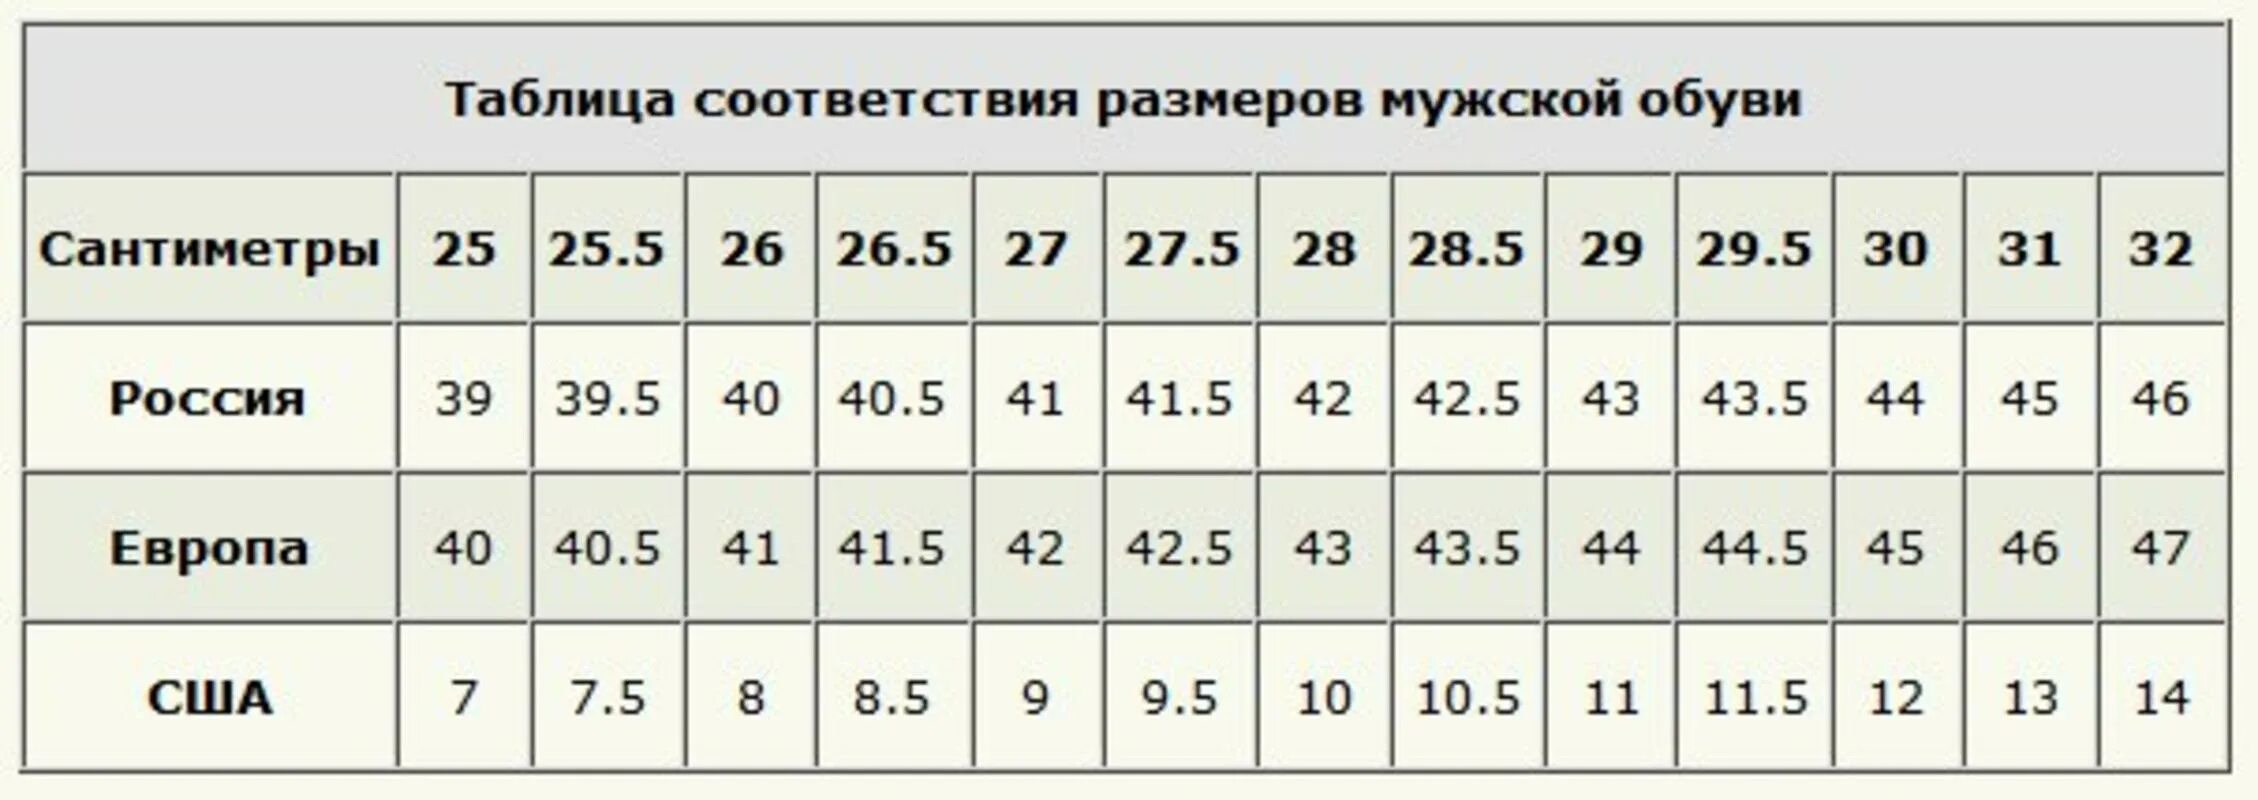 42 это сколько см. 42 Русский размер обуви в см. Российский 40 размер обуви в см. 28 См российский размер обуви. Европейский размер обуви мужской 43.